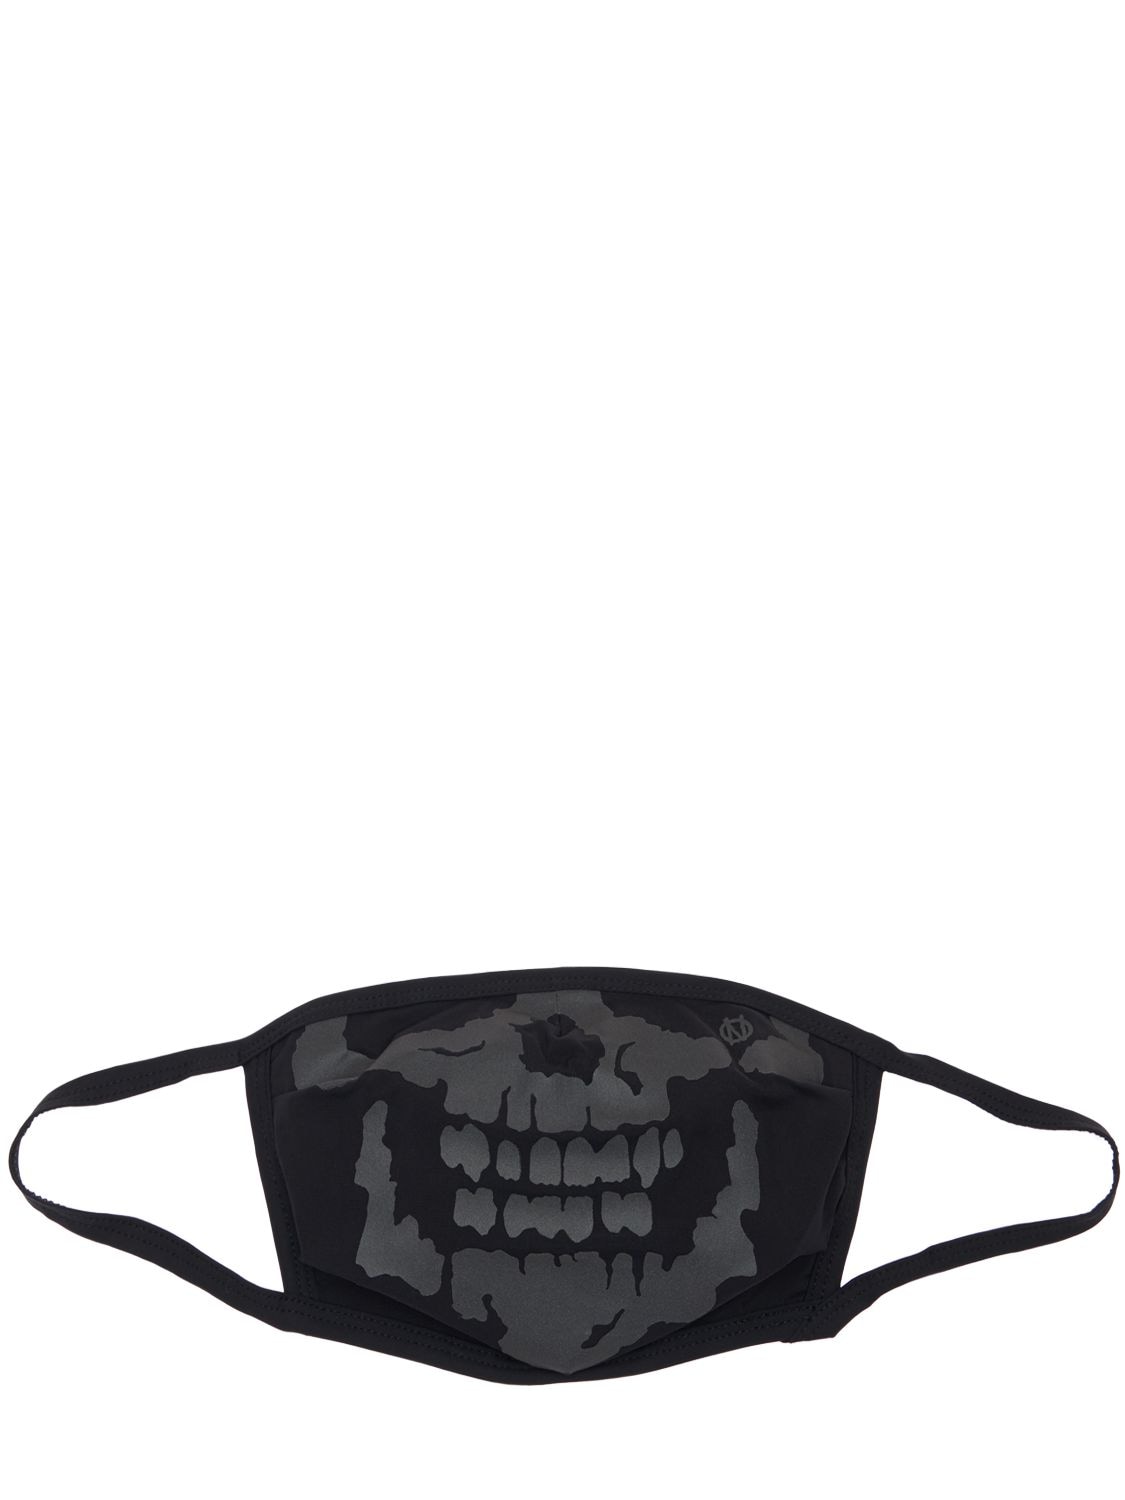 99percentis Reflective Skull Mask In Black